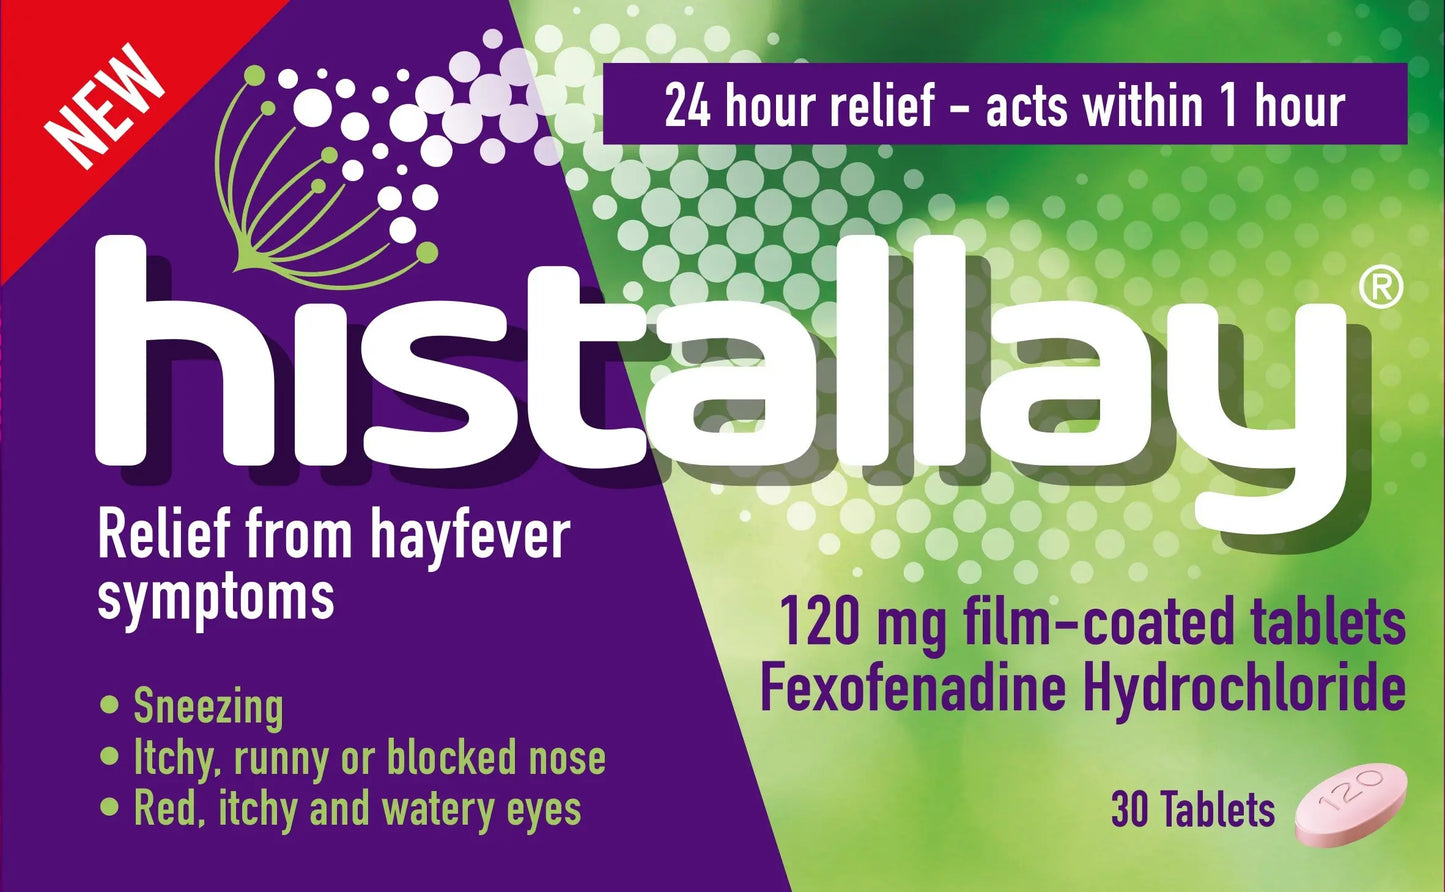 Histallay (Fexofenadine) 120mg Film-Coated Tablets – 30 Tablets